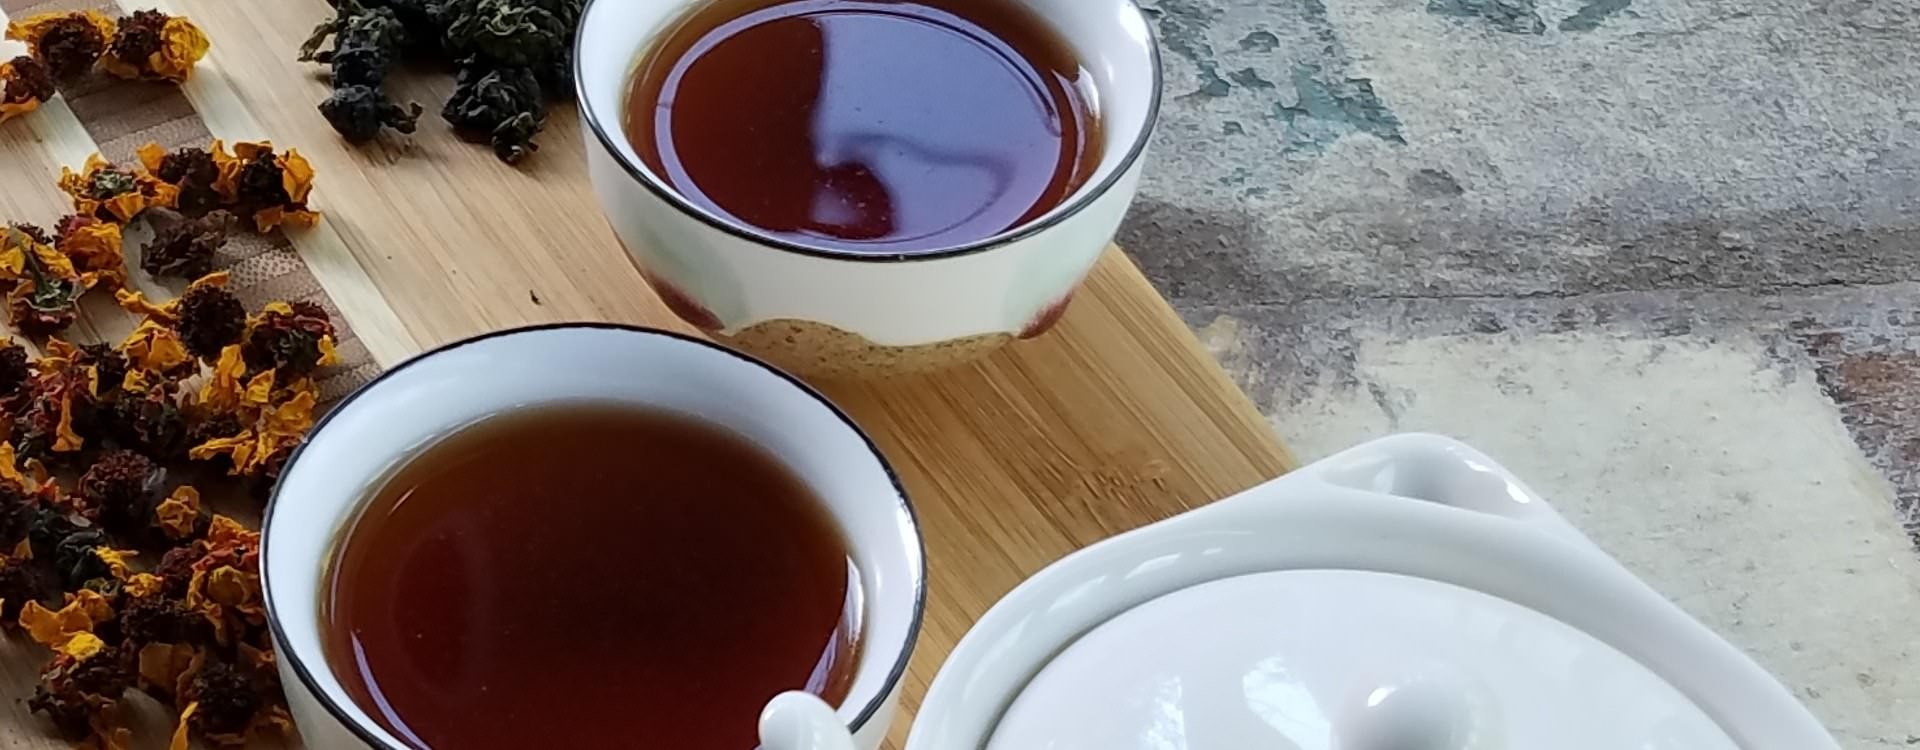 Como preparar una buena taza de té